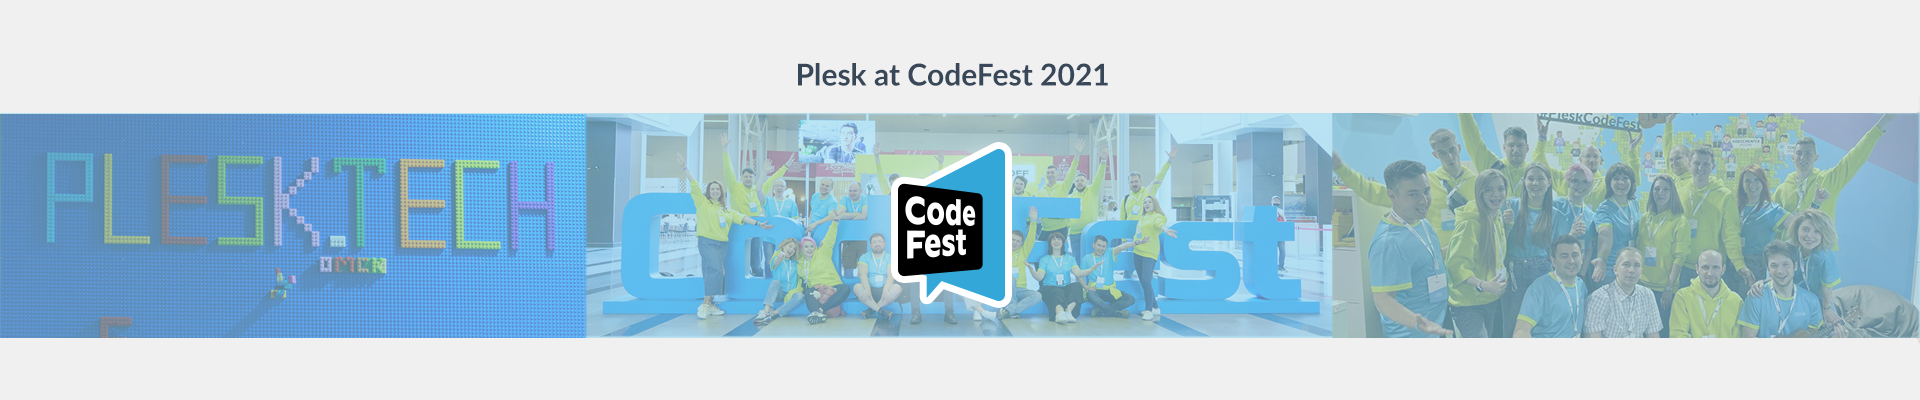 CodeFest Plesk blog header